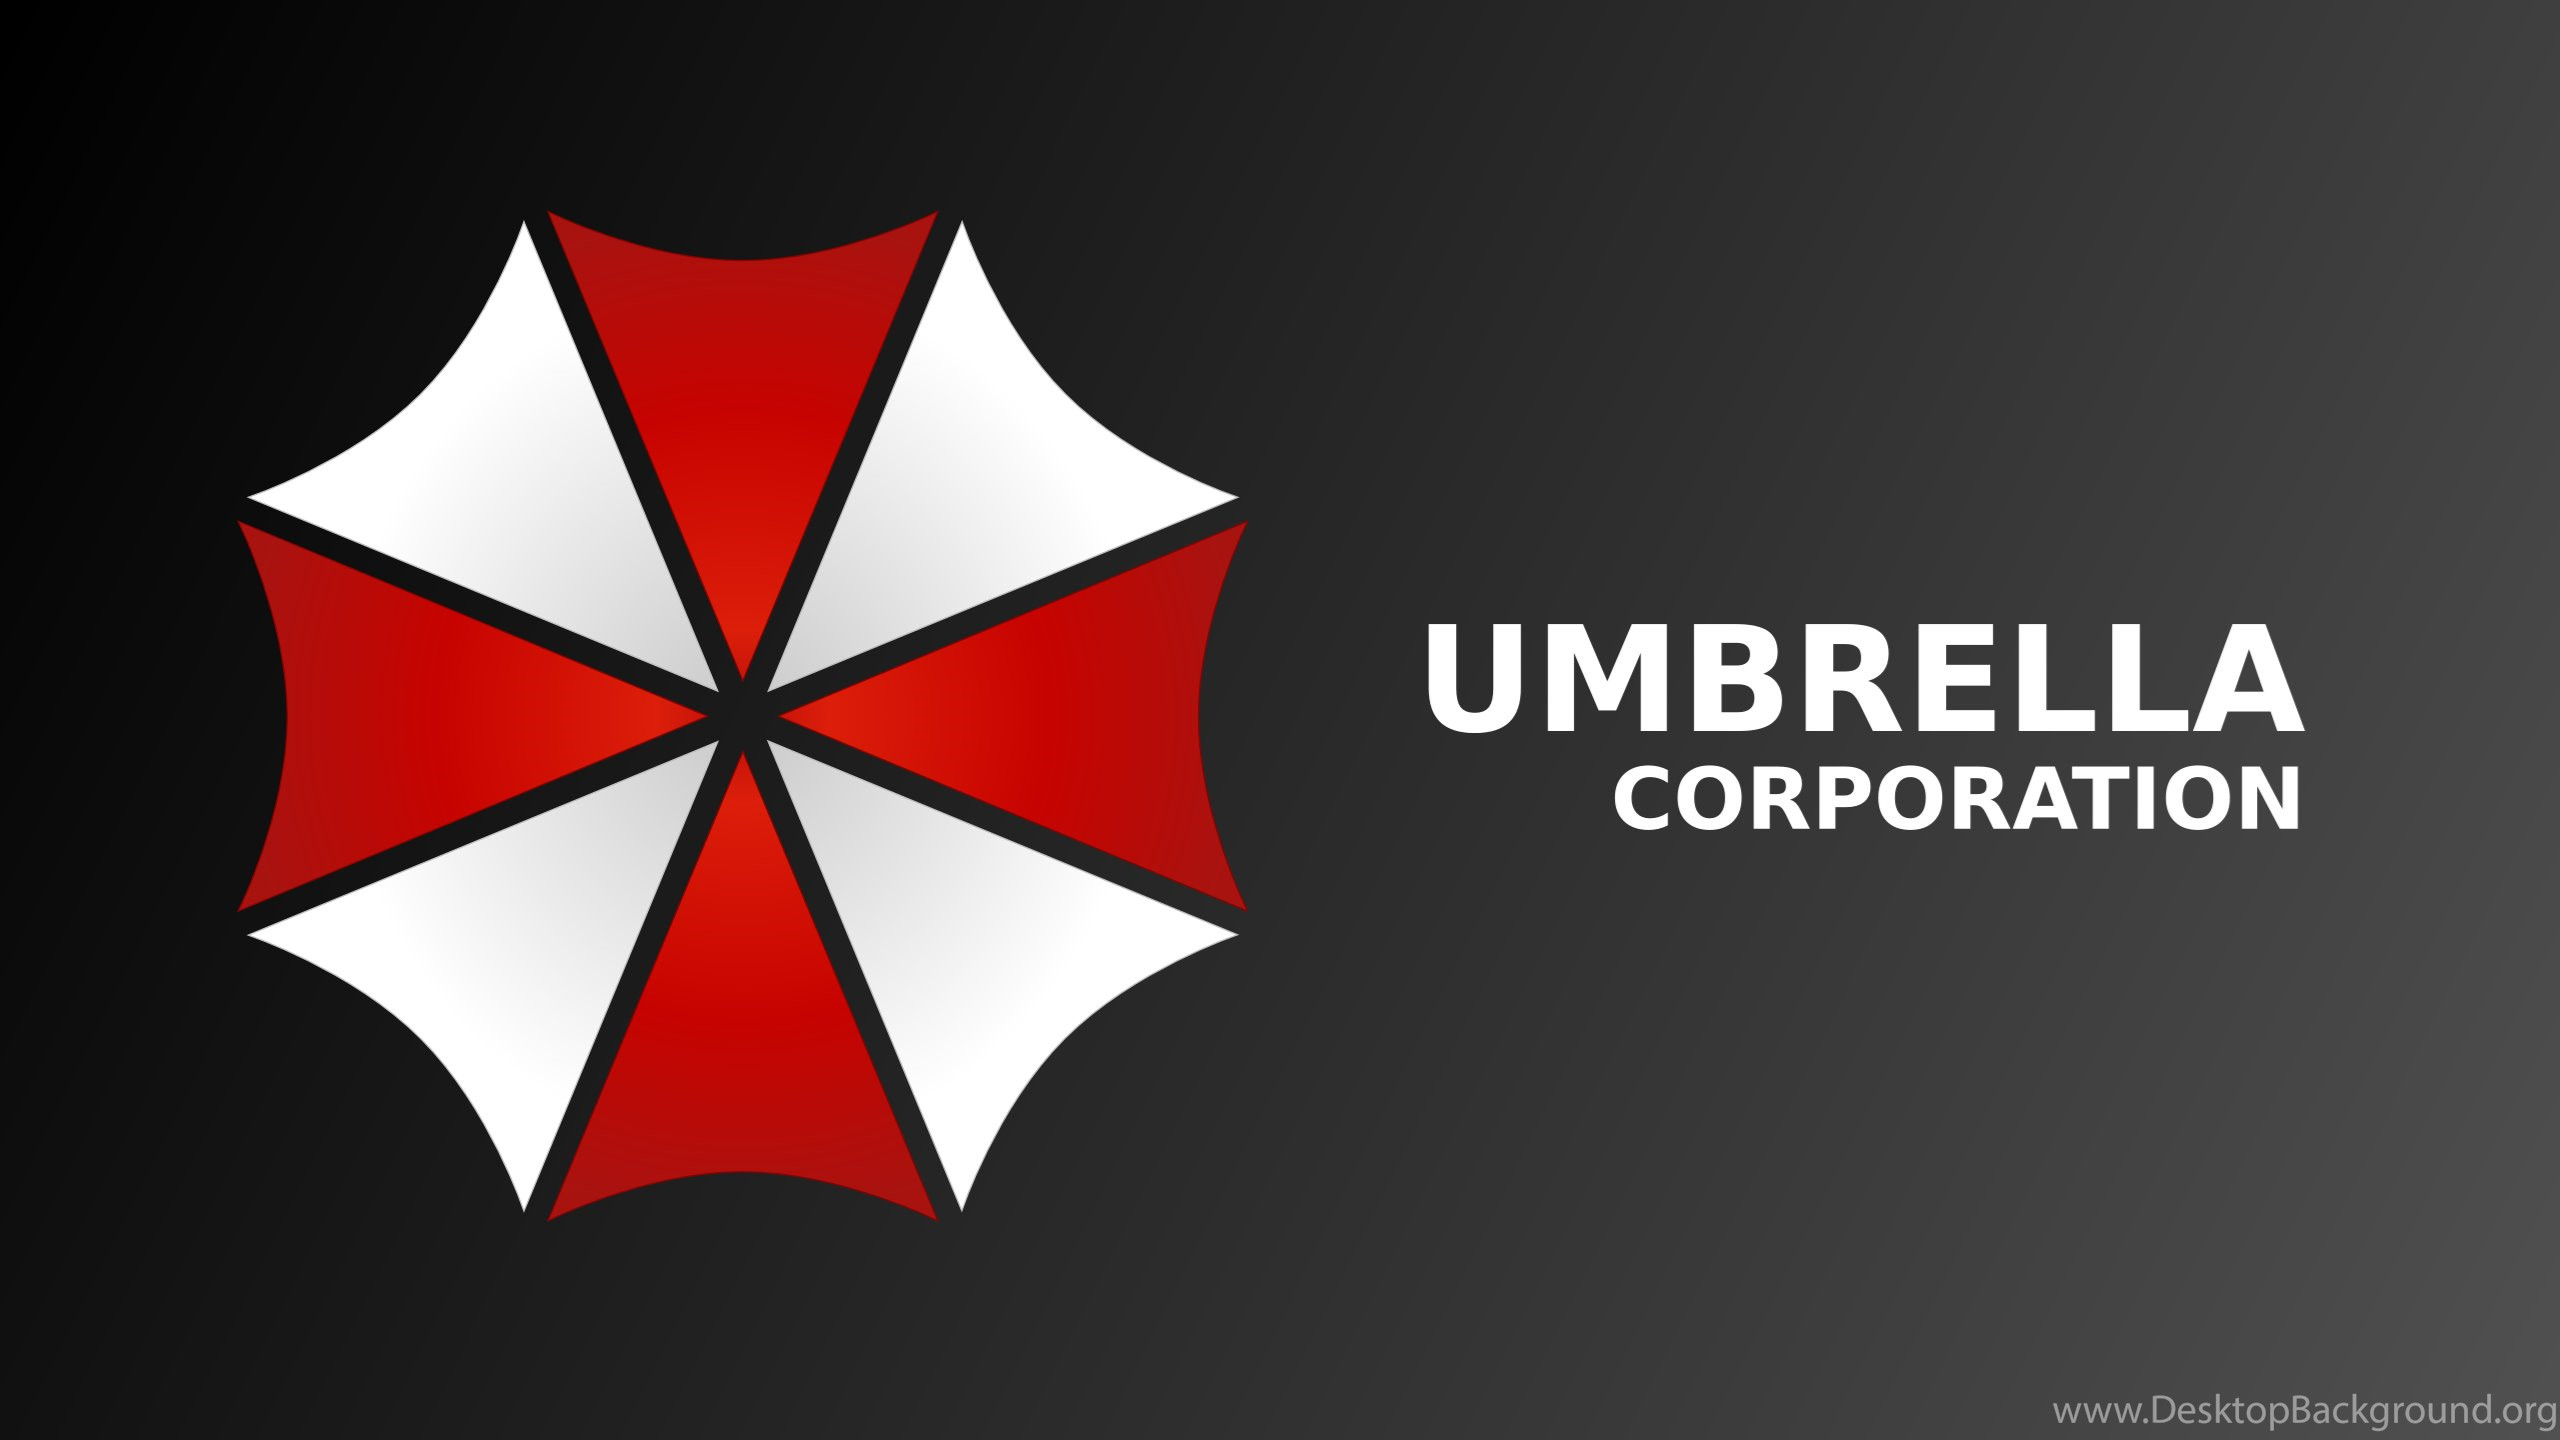 Umbrella Corporation Wallpaper background picture